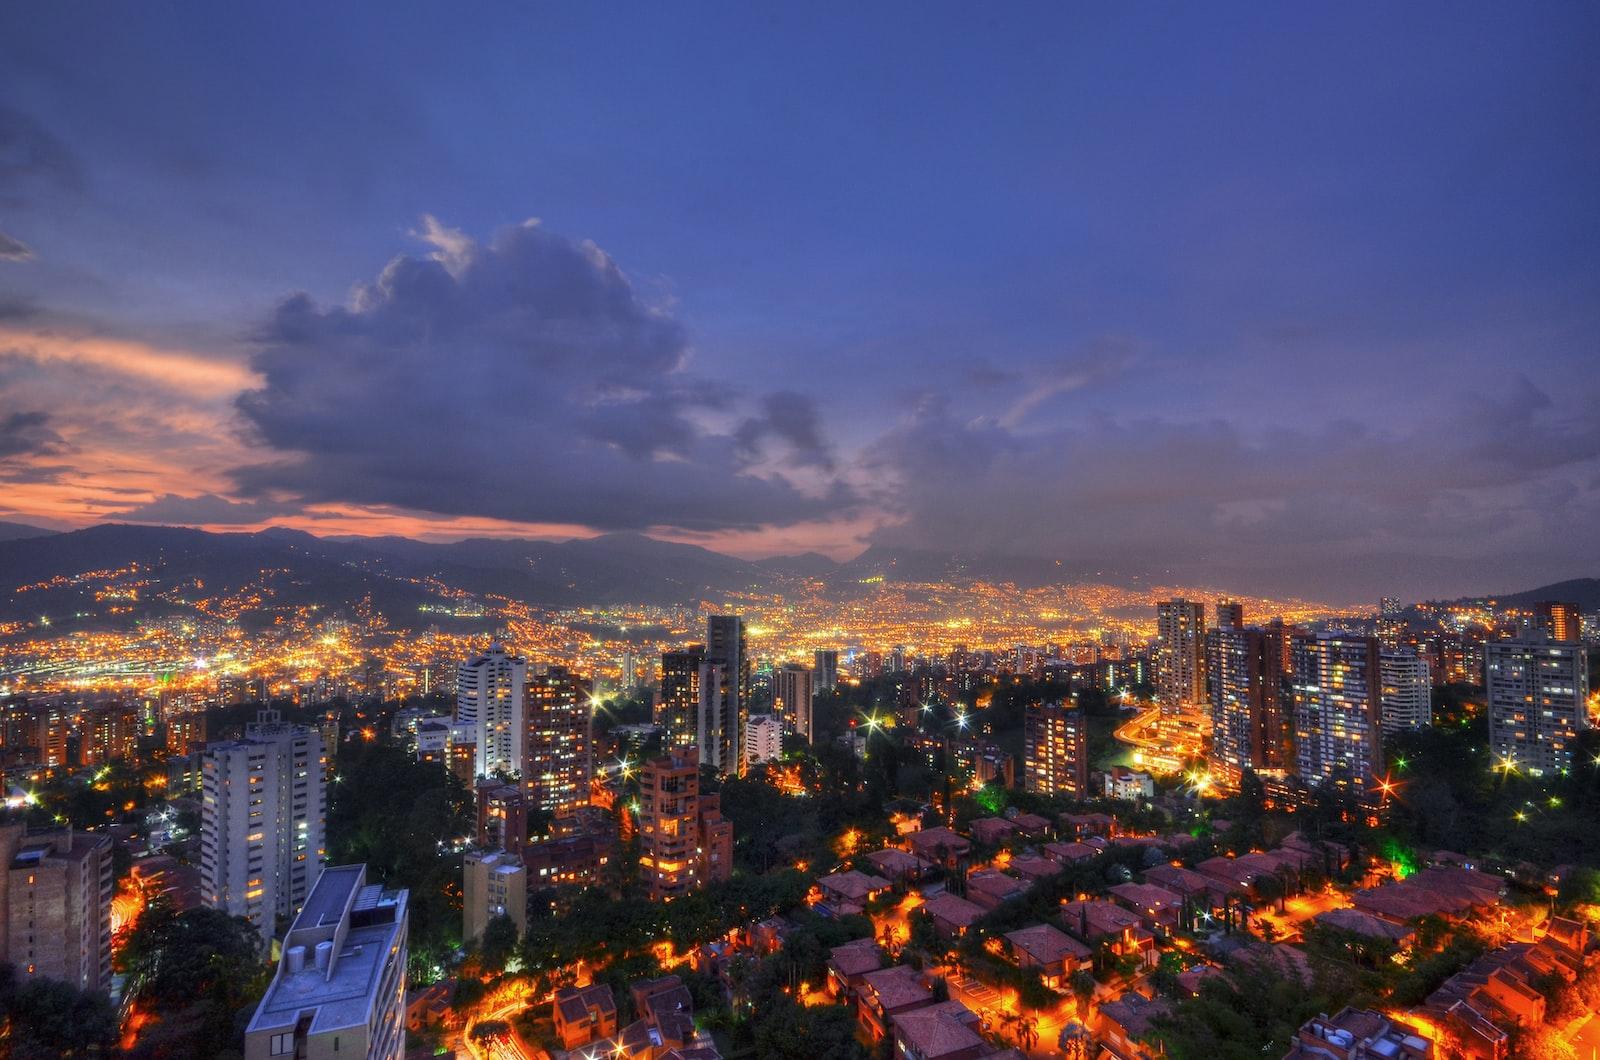 Turismo De Salud Y Bienestar, Alternativa Para Reactivar Economía En Colombia